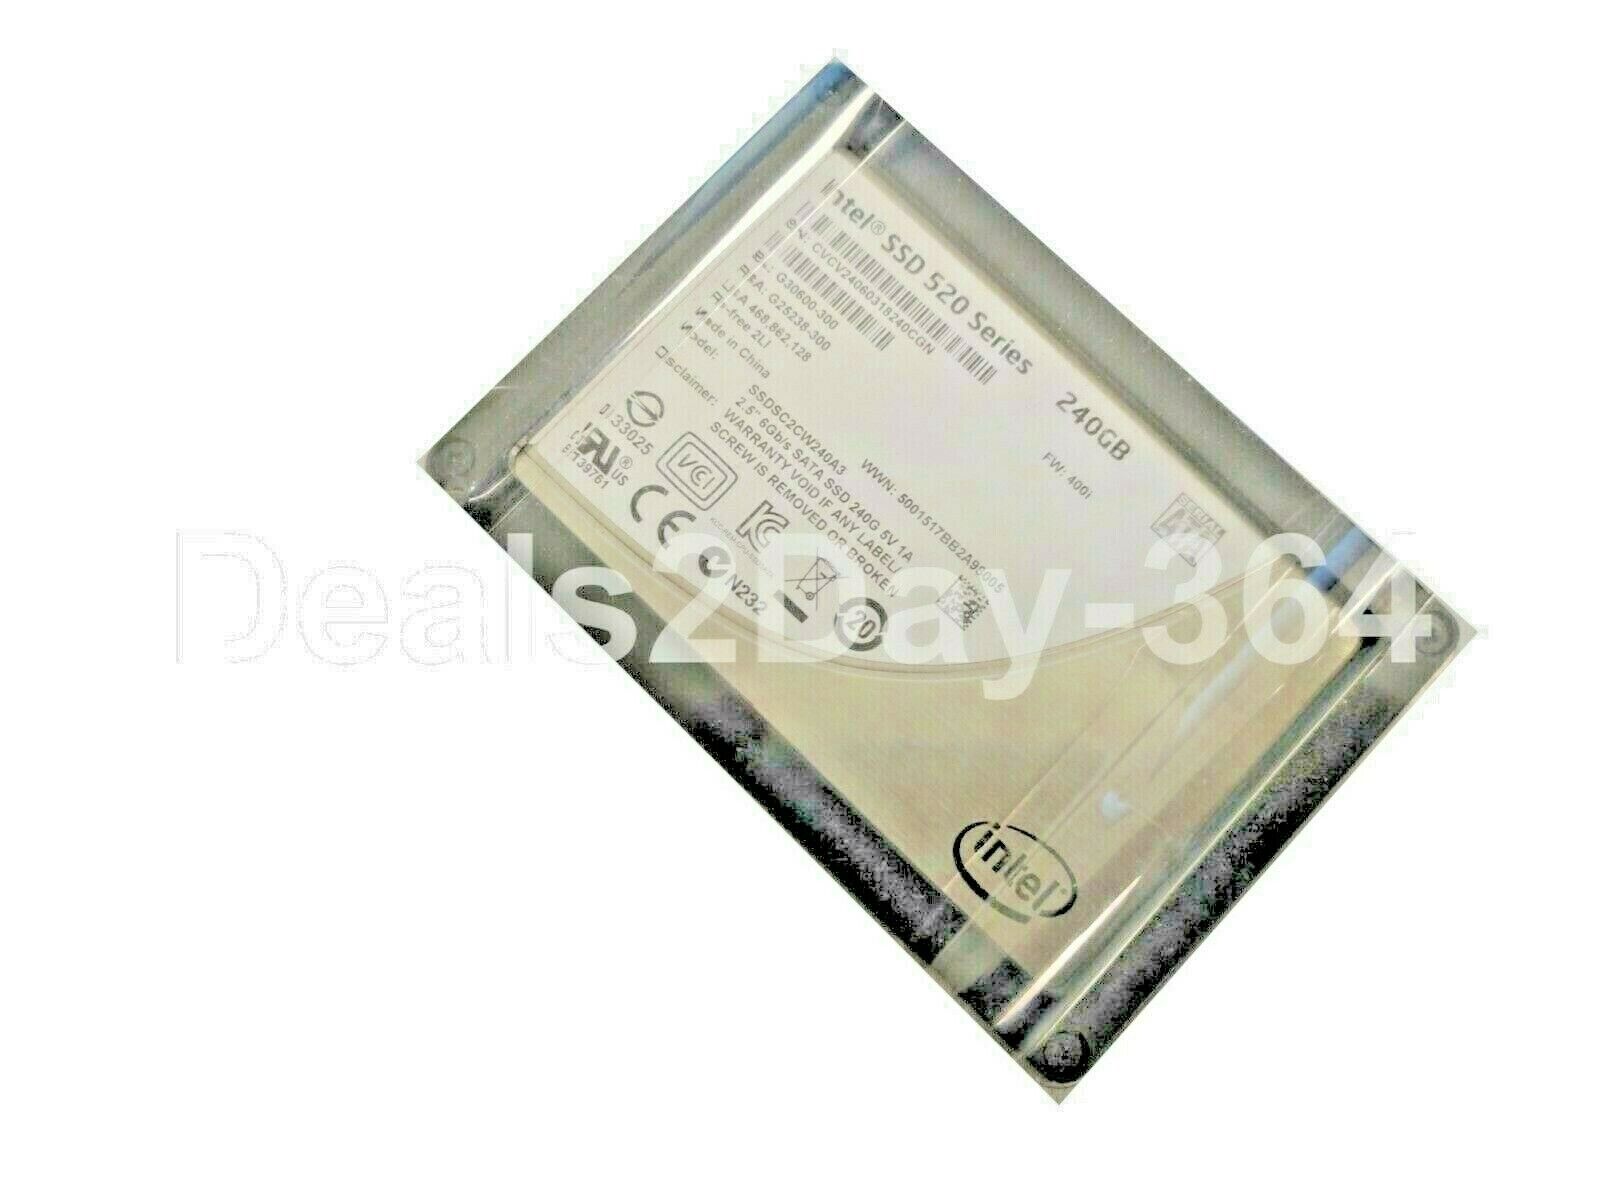 Intel SSD 520 Series SSDSC2CW240A3 240GB